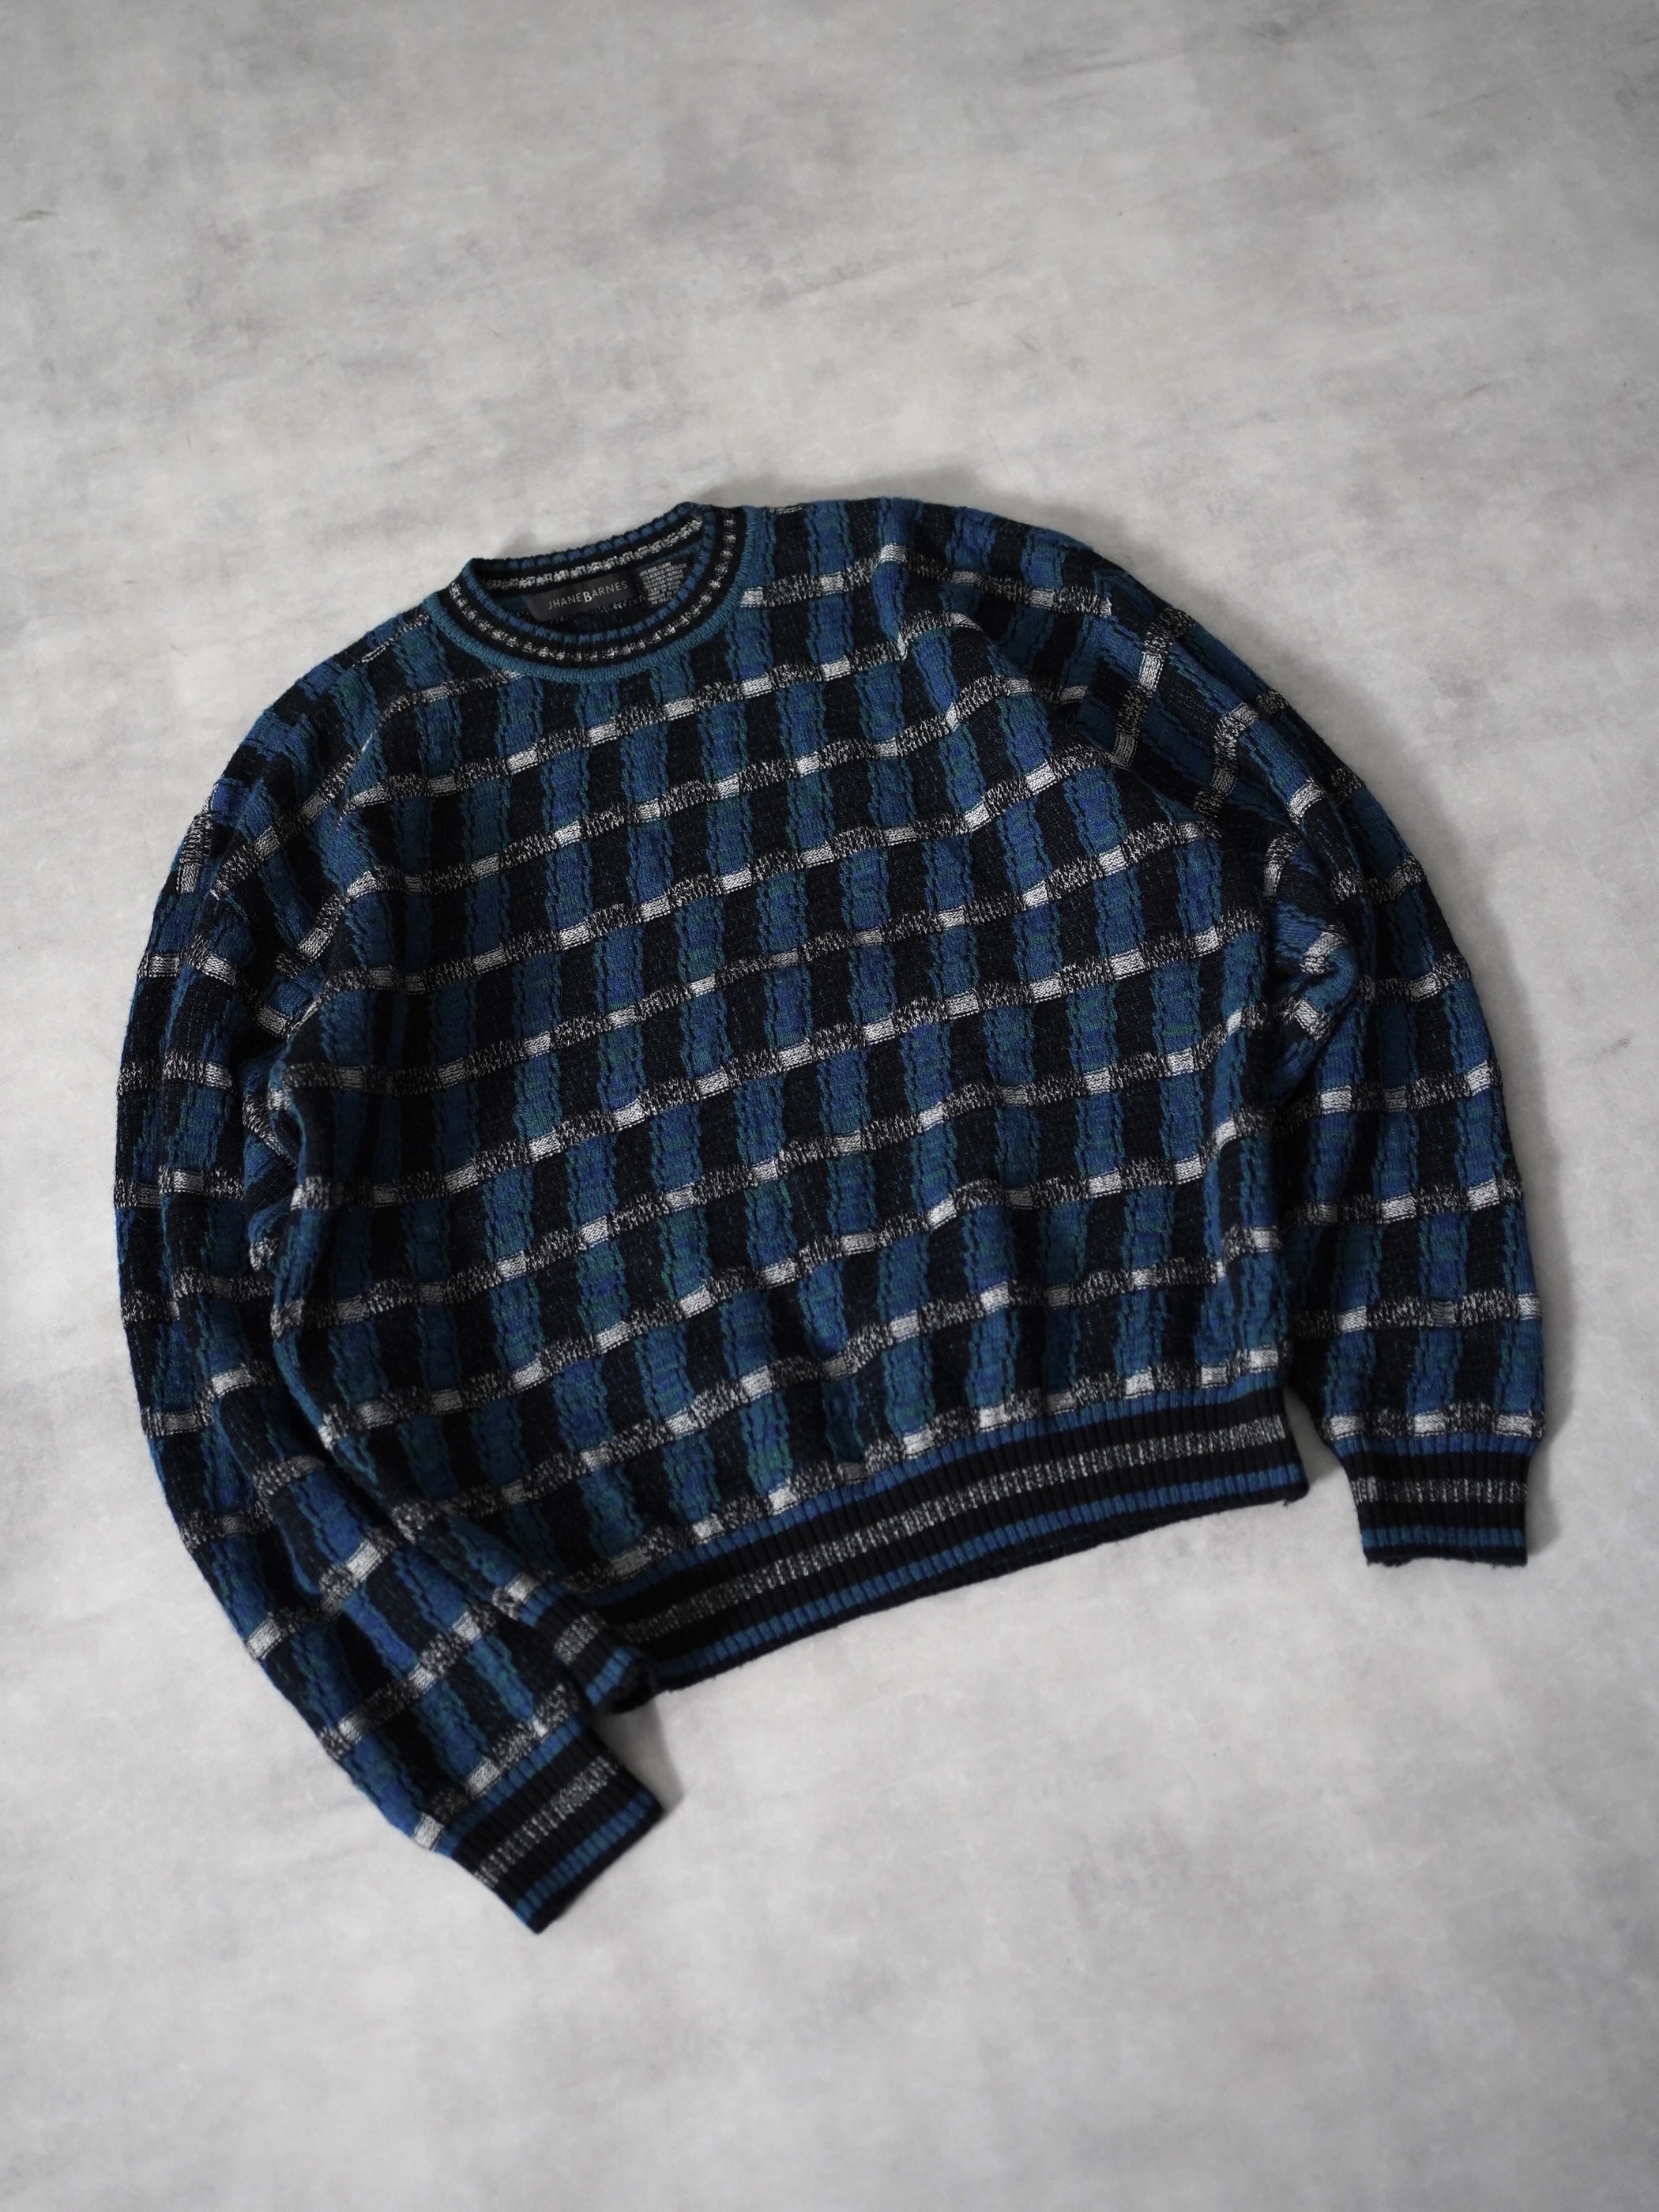 1990's JHANE BARNES [Wool・Alpaca・Rayon・Nylon] knit Check sweater / Made in Hong Kong